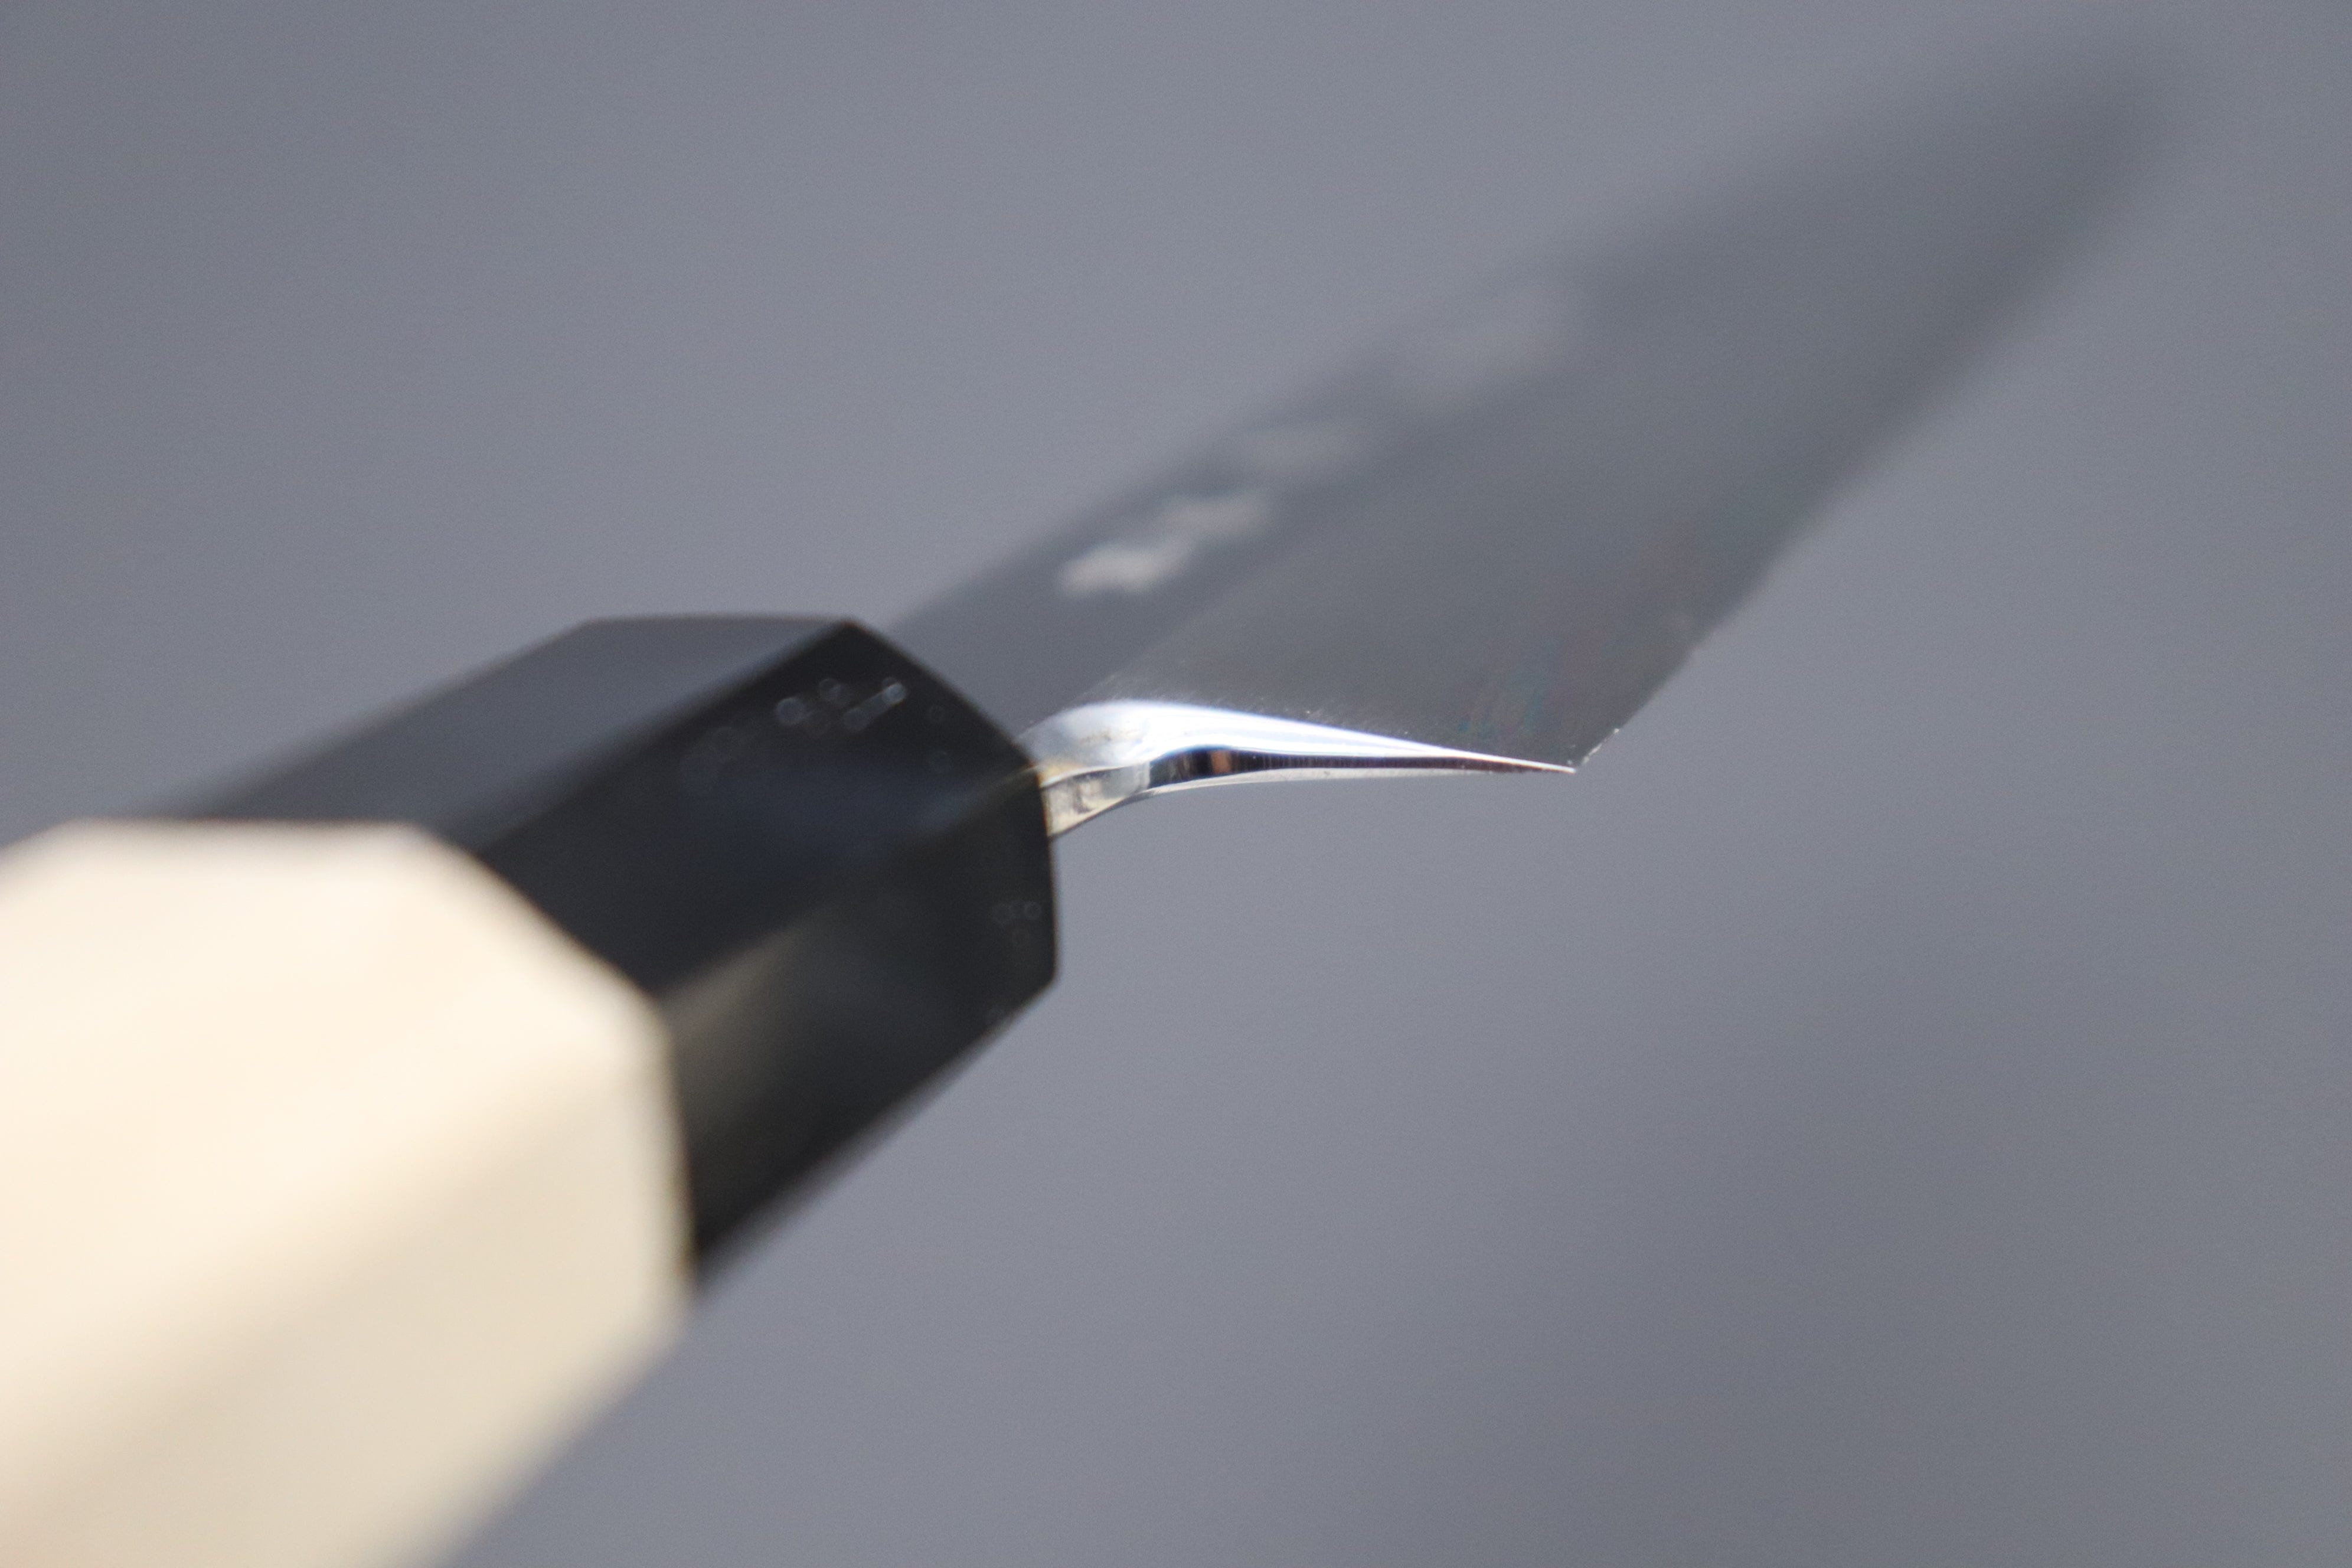 BLACKTIP 6 NonStick Fillet Knife